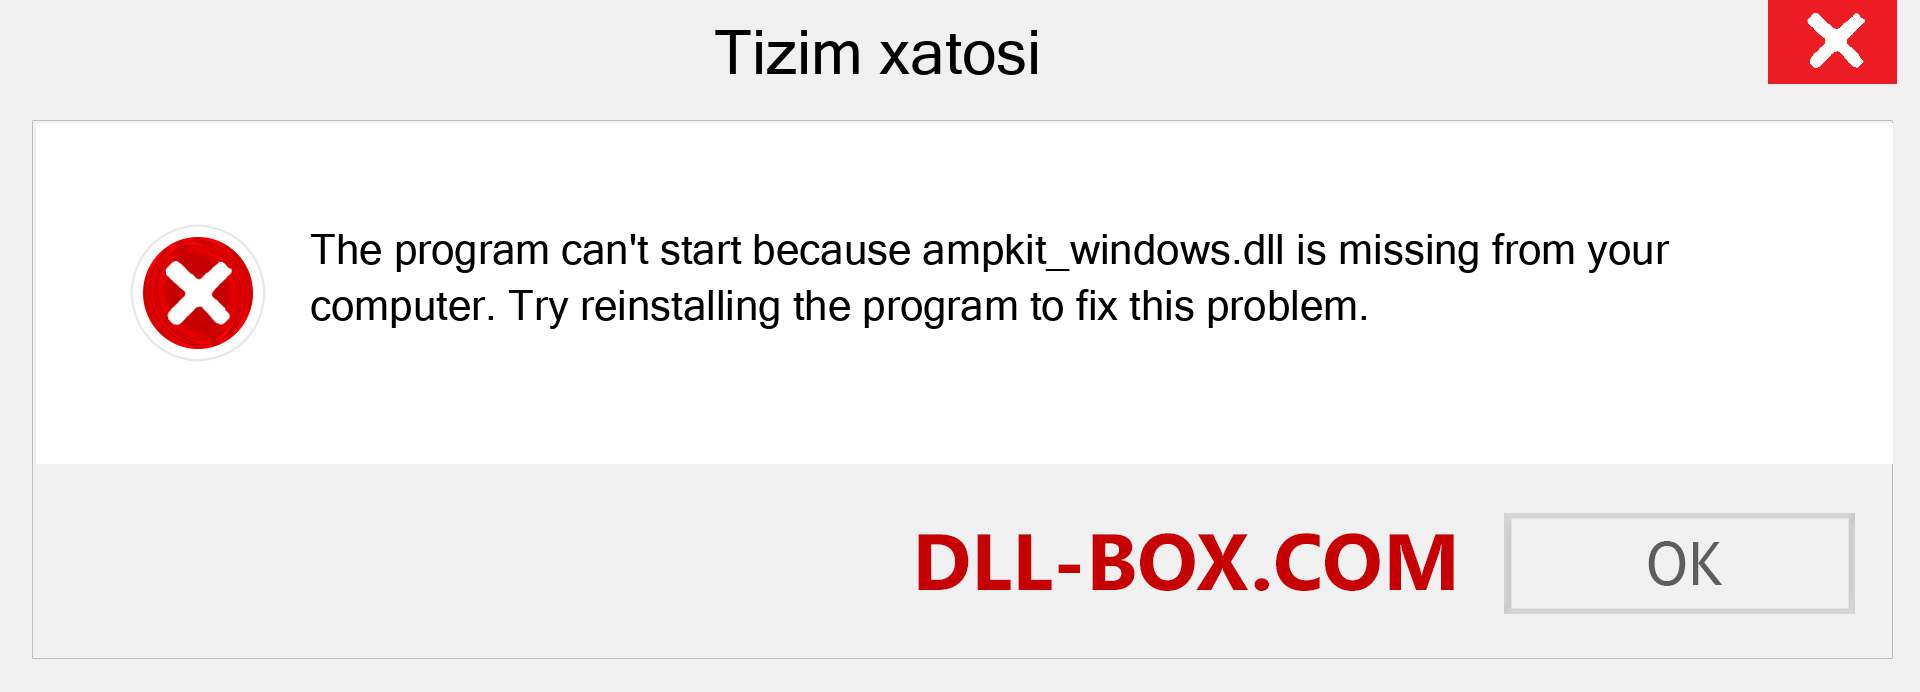 ampkit_windows.dll fayli yo'qolganmi?. Windows 7, 8, 10 uchun yuklab olish - Windowsda ampkit_windows dll etishmayotgan xatoni tuzating, rasmlar, rasmlar